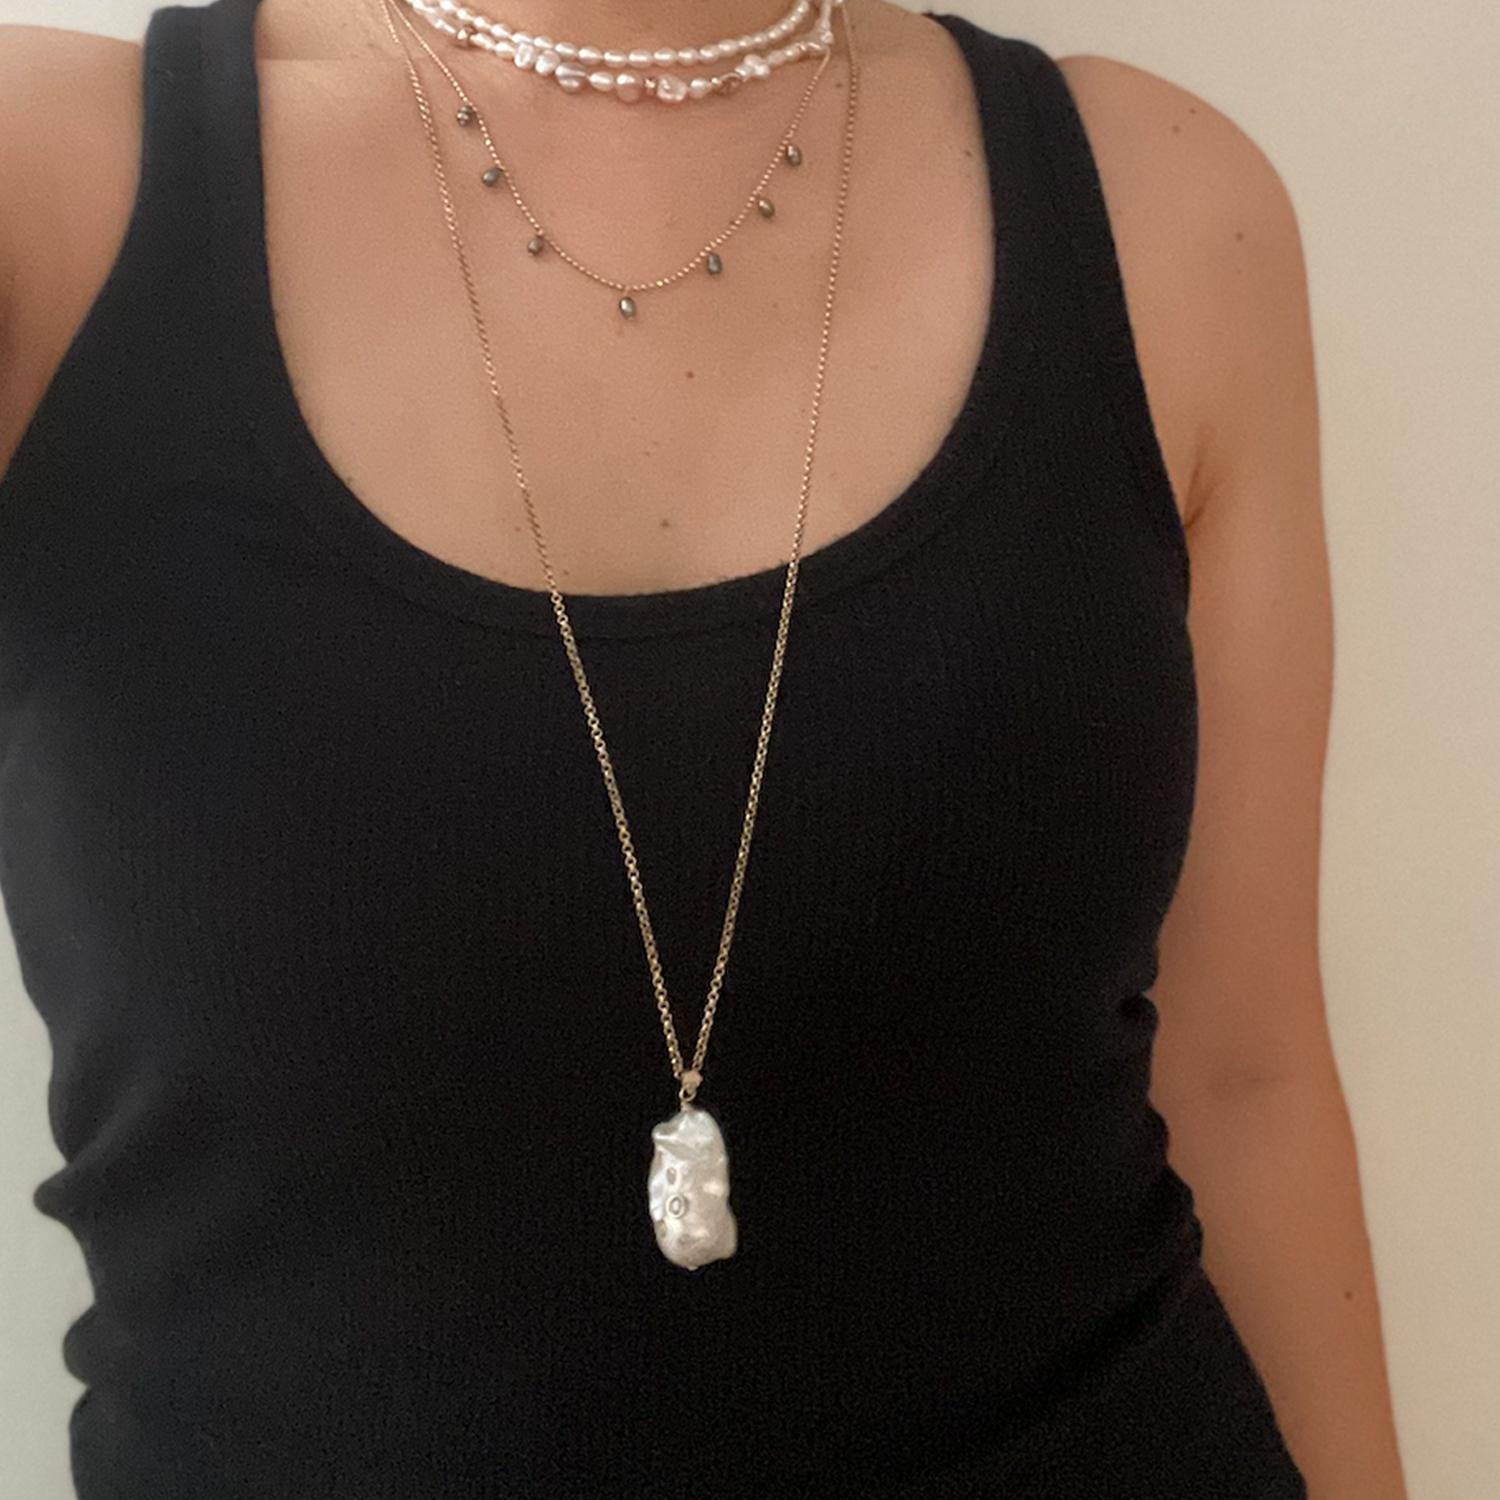 Ce pendentif en forme de perle baroque incrustée de diamants est monté sur une lourde chaîne en câble. Il est donc parfait pour être associé à vos chaînes, perles et colliers préférés.

De jour comme de nuit, sur un débardeur ou un col roulé, ce